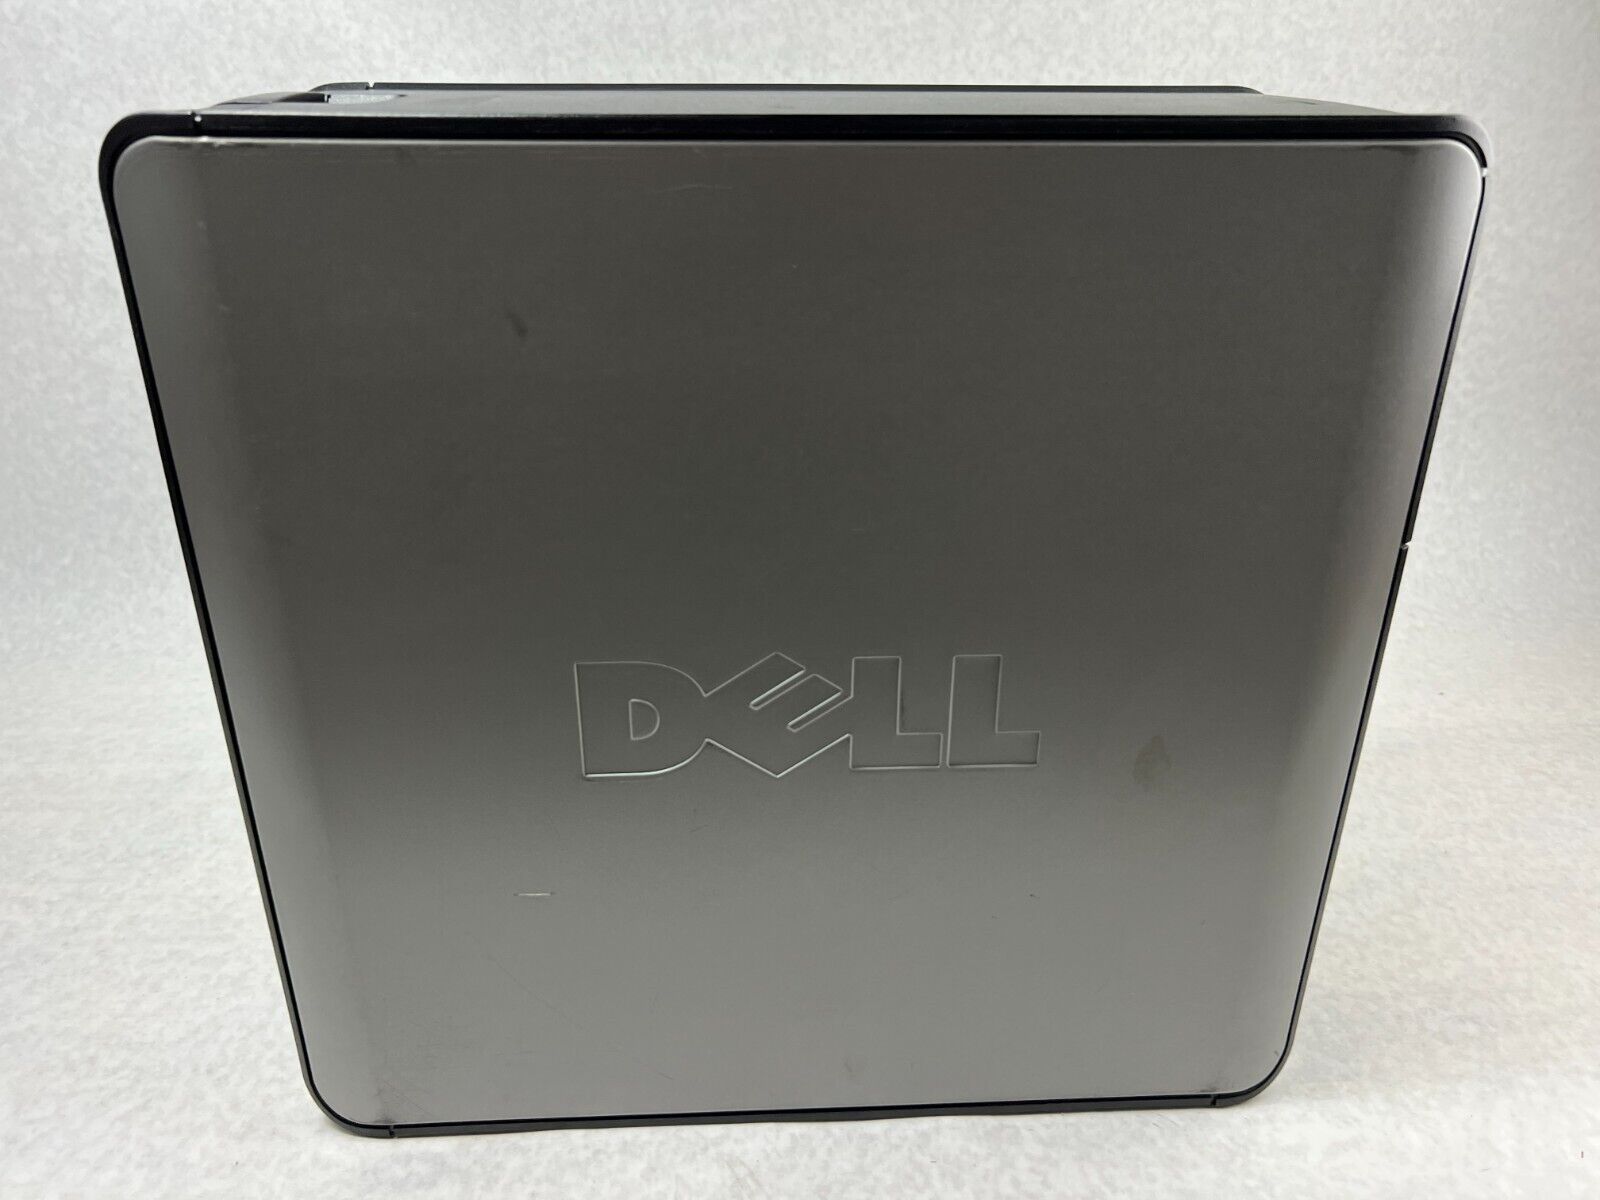 Dell OptiPlex 755 MT Intel Pentium Dual-E2160 1.80GHz 2GB RAM No HDD No OS